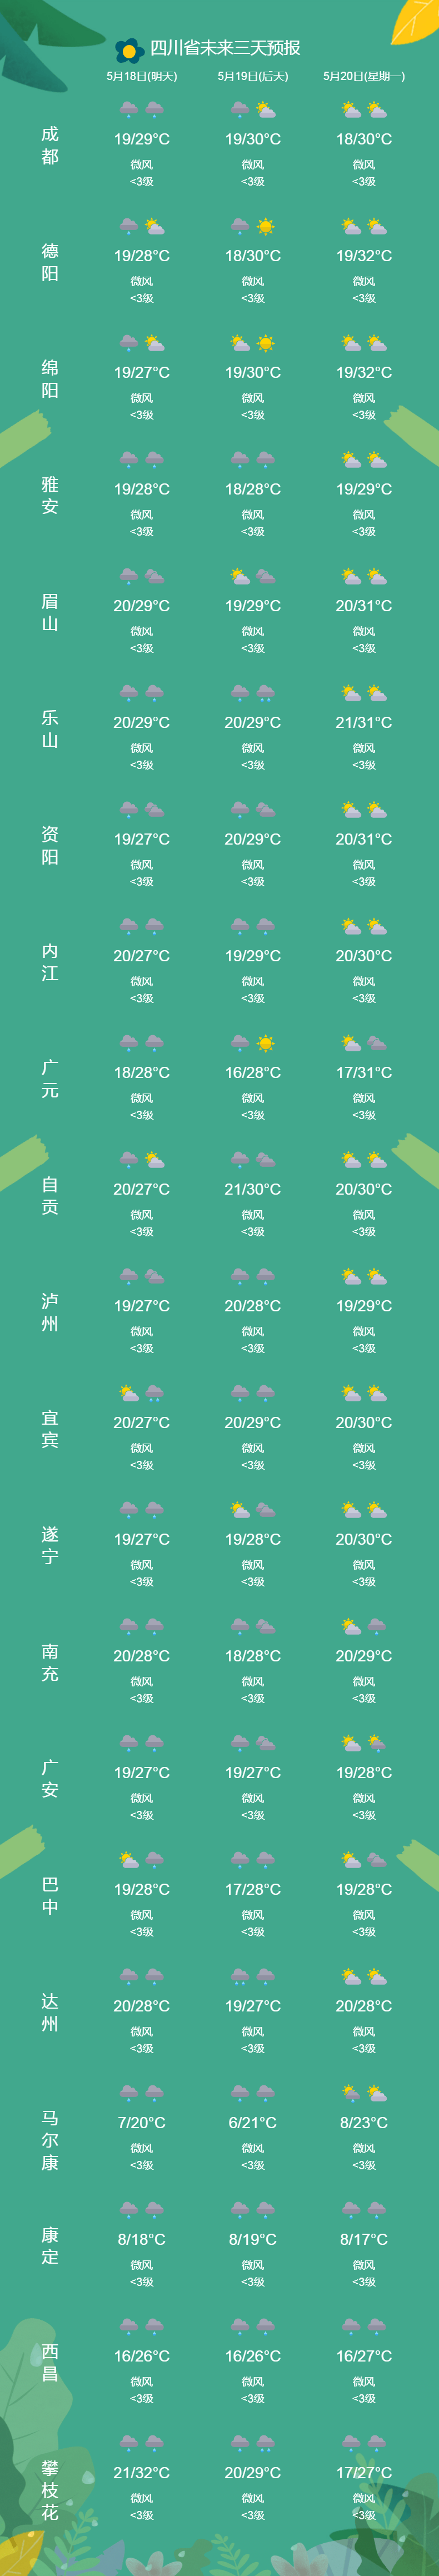 自贡天气预报15天气图片